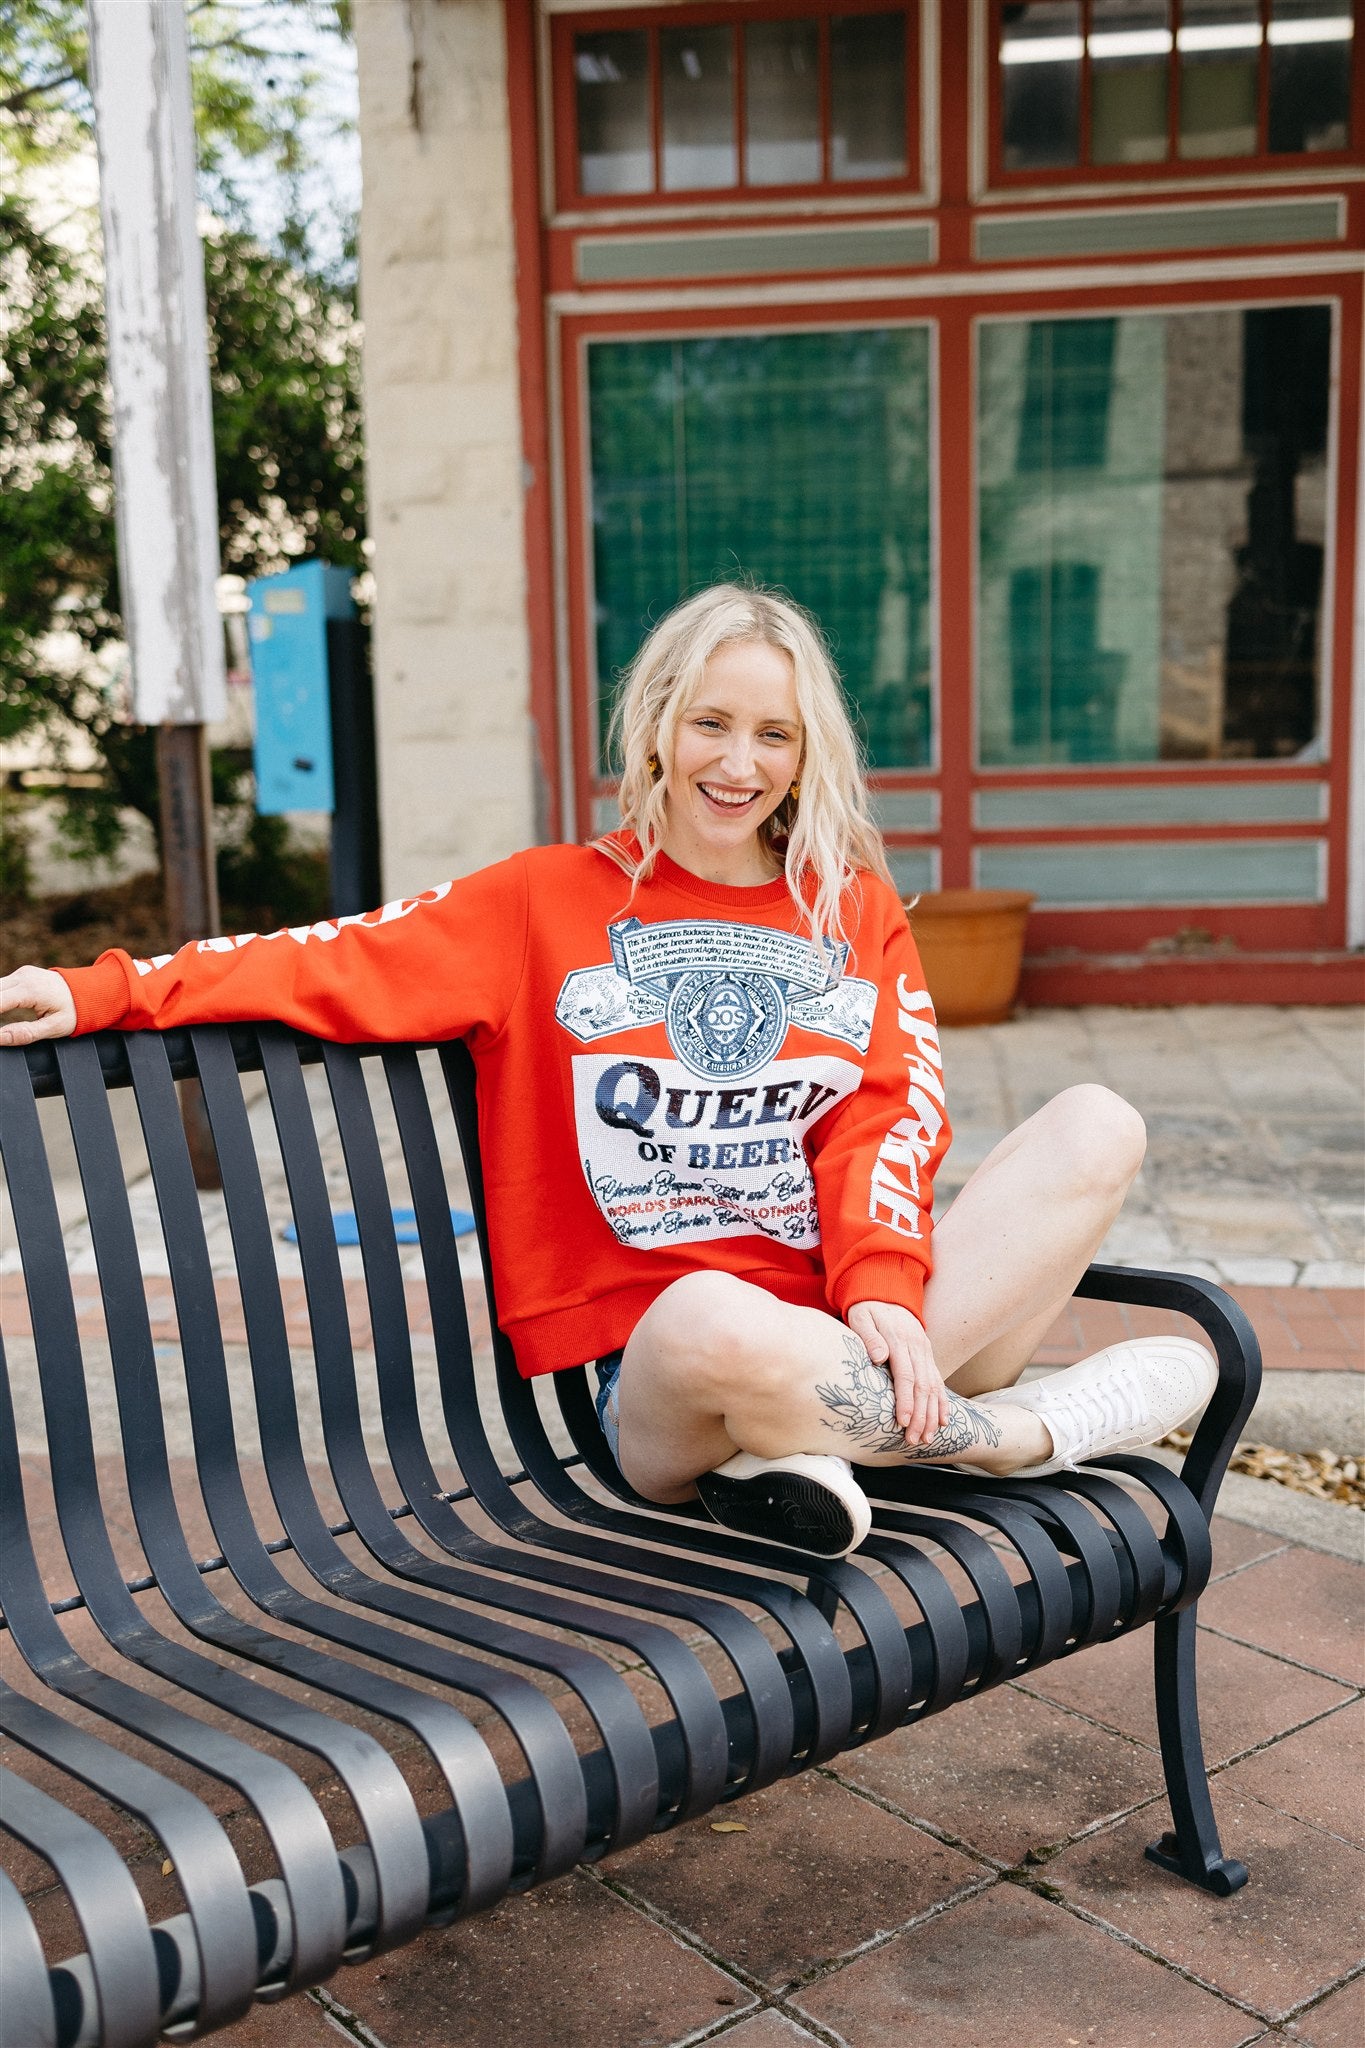 QOS Queen of Beers Sweatshirt